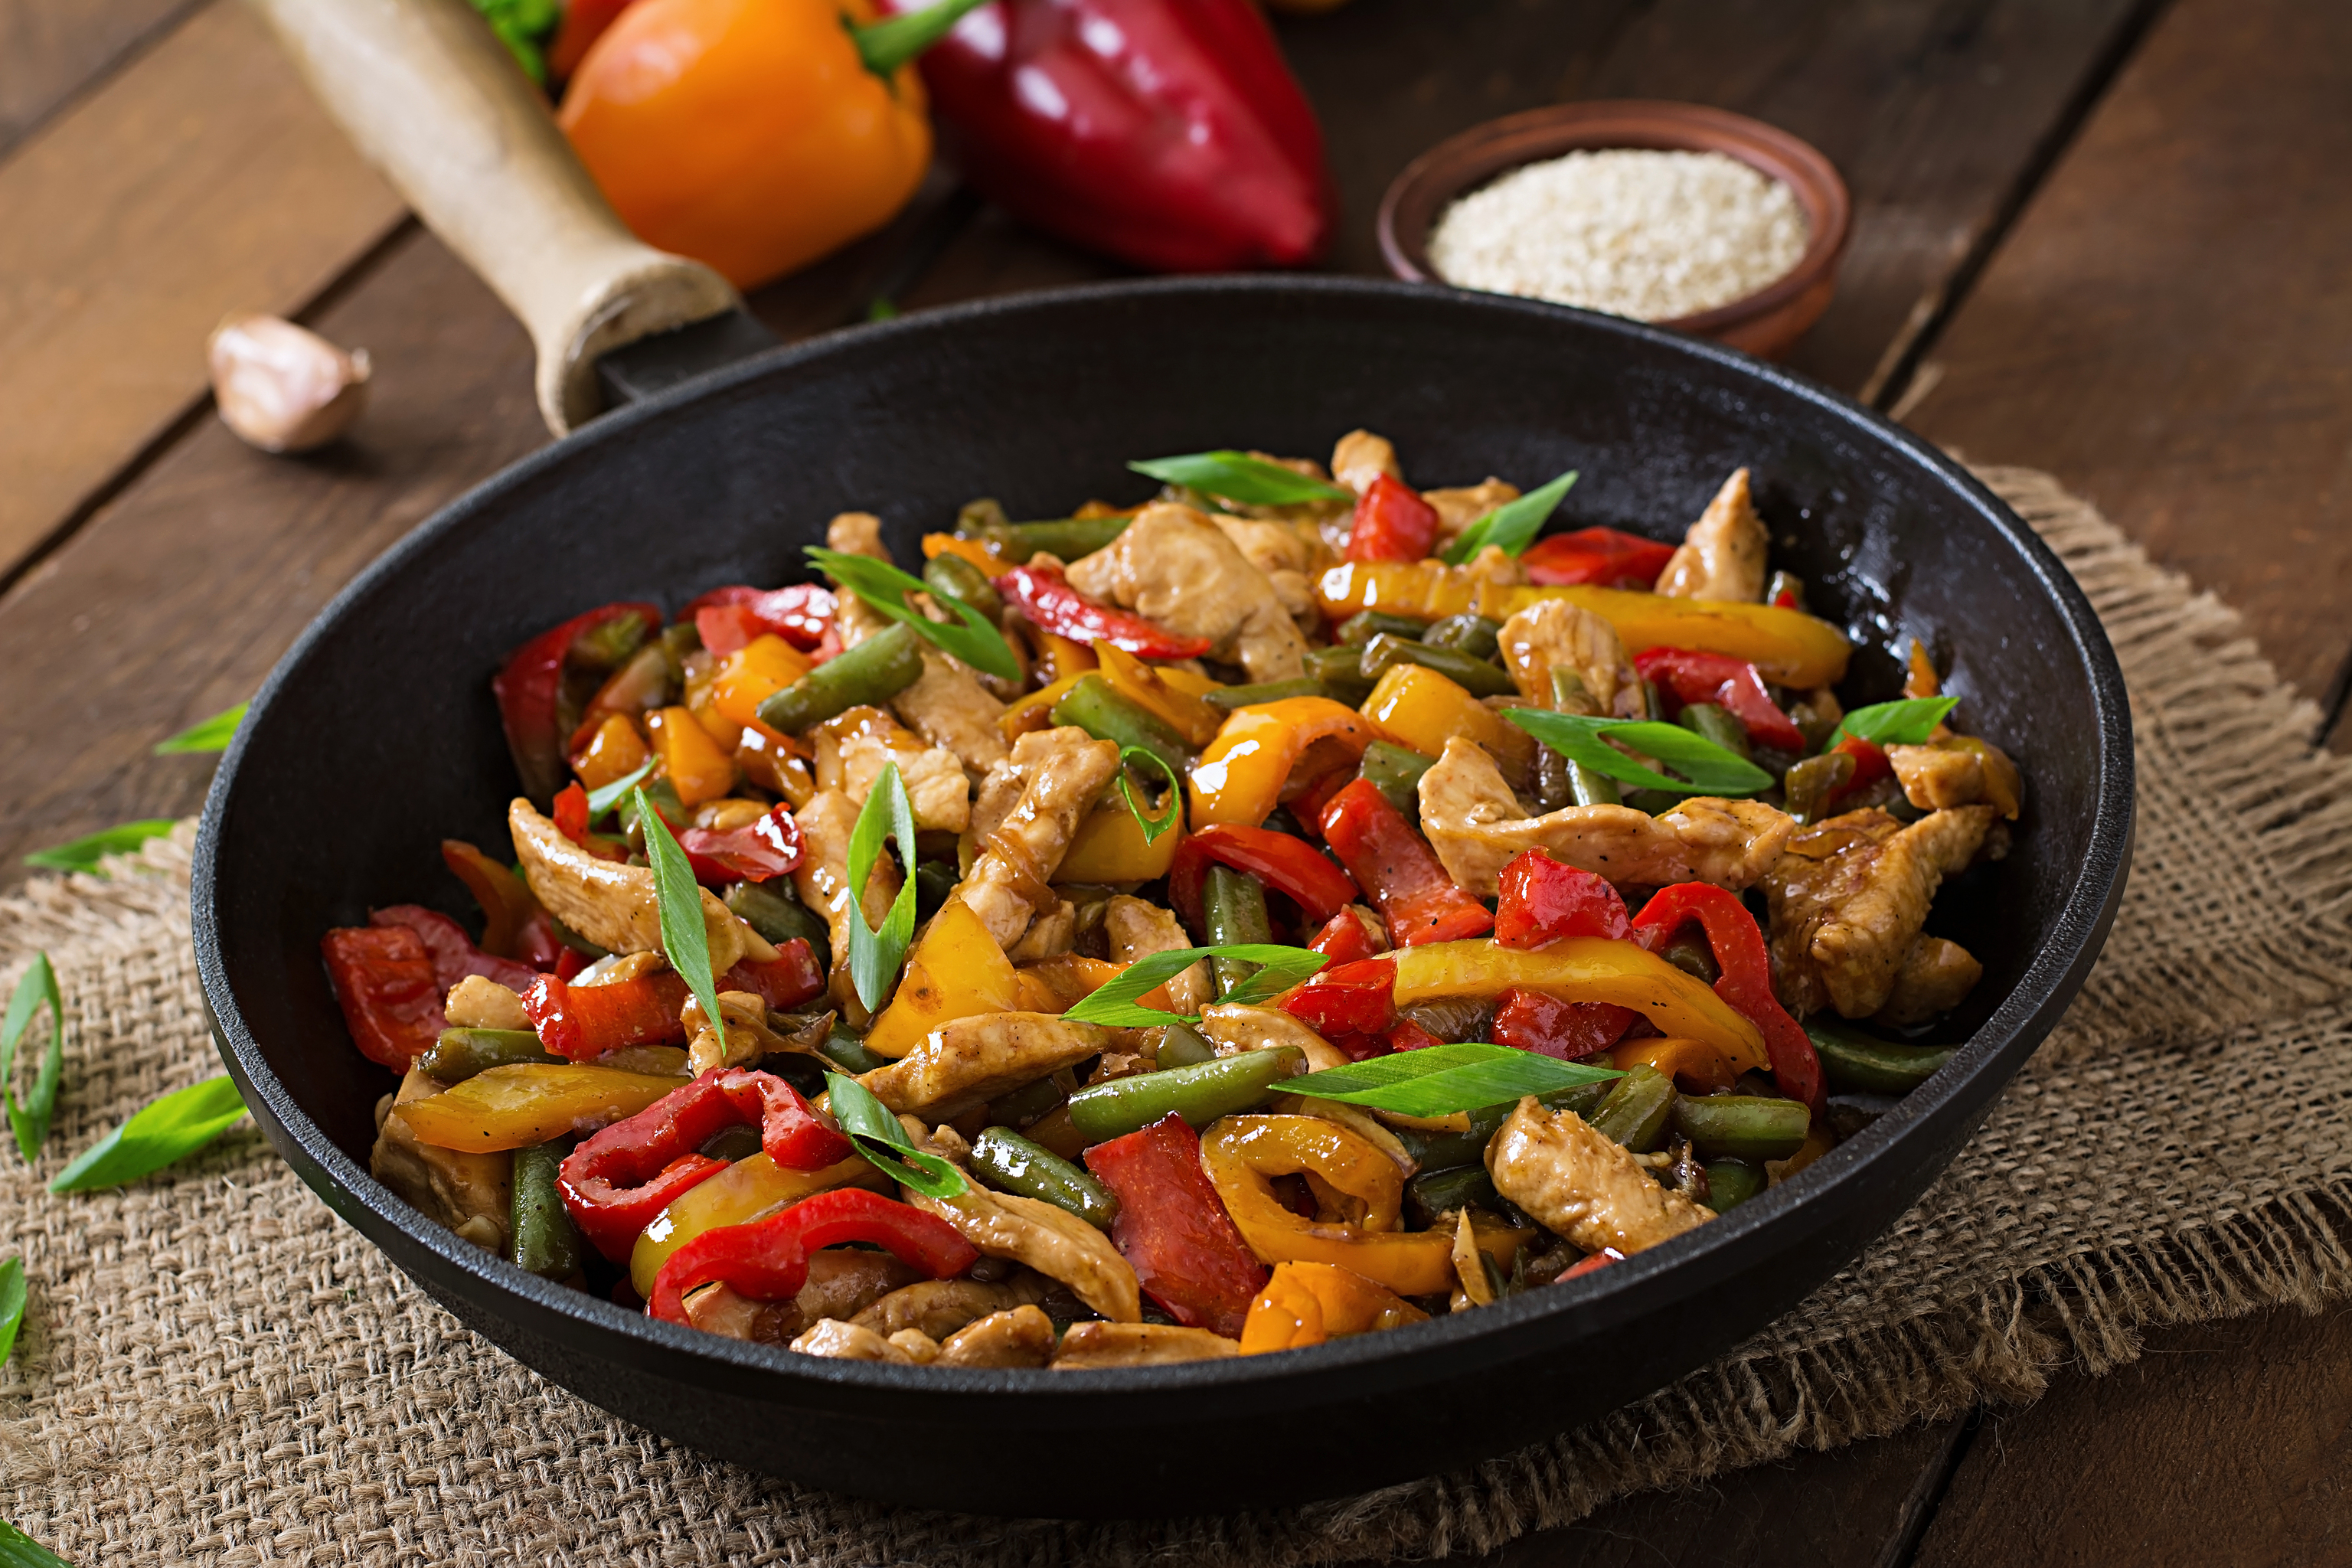 verduras y pollo cocinados en el wok: sano y fácil.